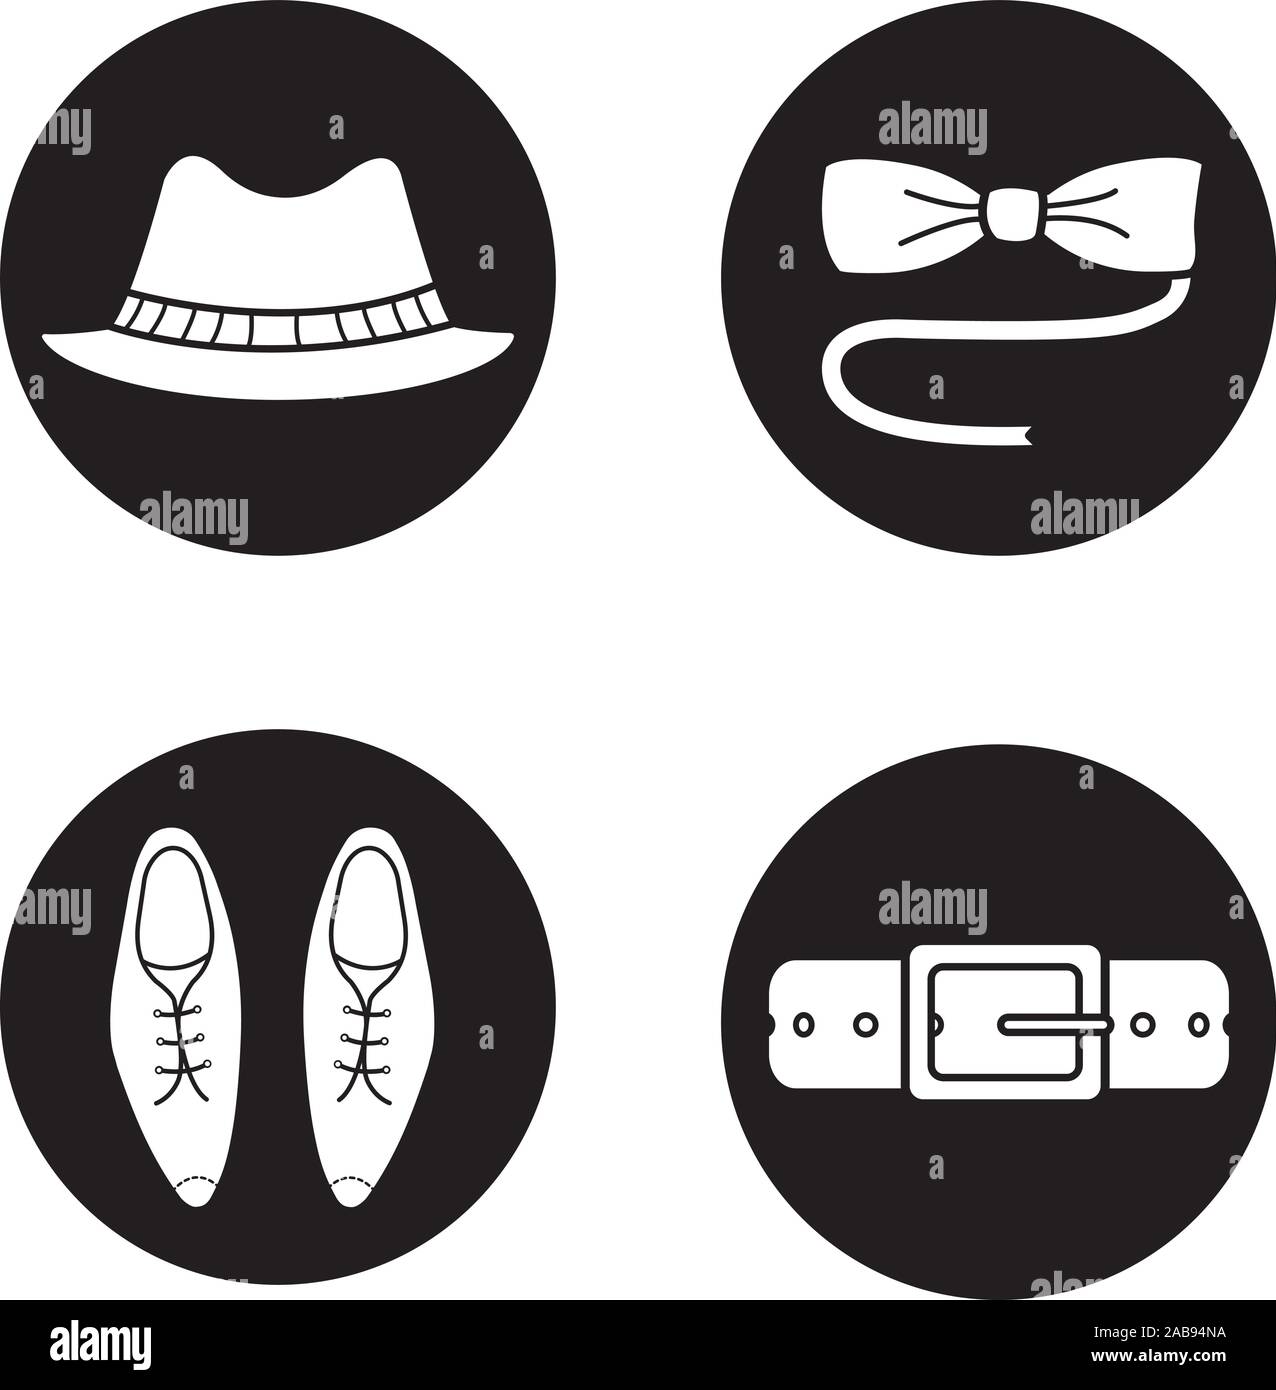 Los hombres de accesorios del conjunto de iconos. Homburg hat, mariposas pajarita, classic zapatos de cuero y correa. Vector ilustraciones en blanco en círculos negros Ilustración del Vector